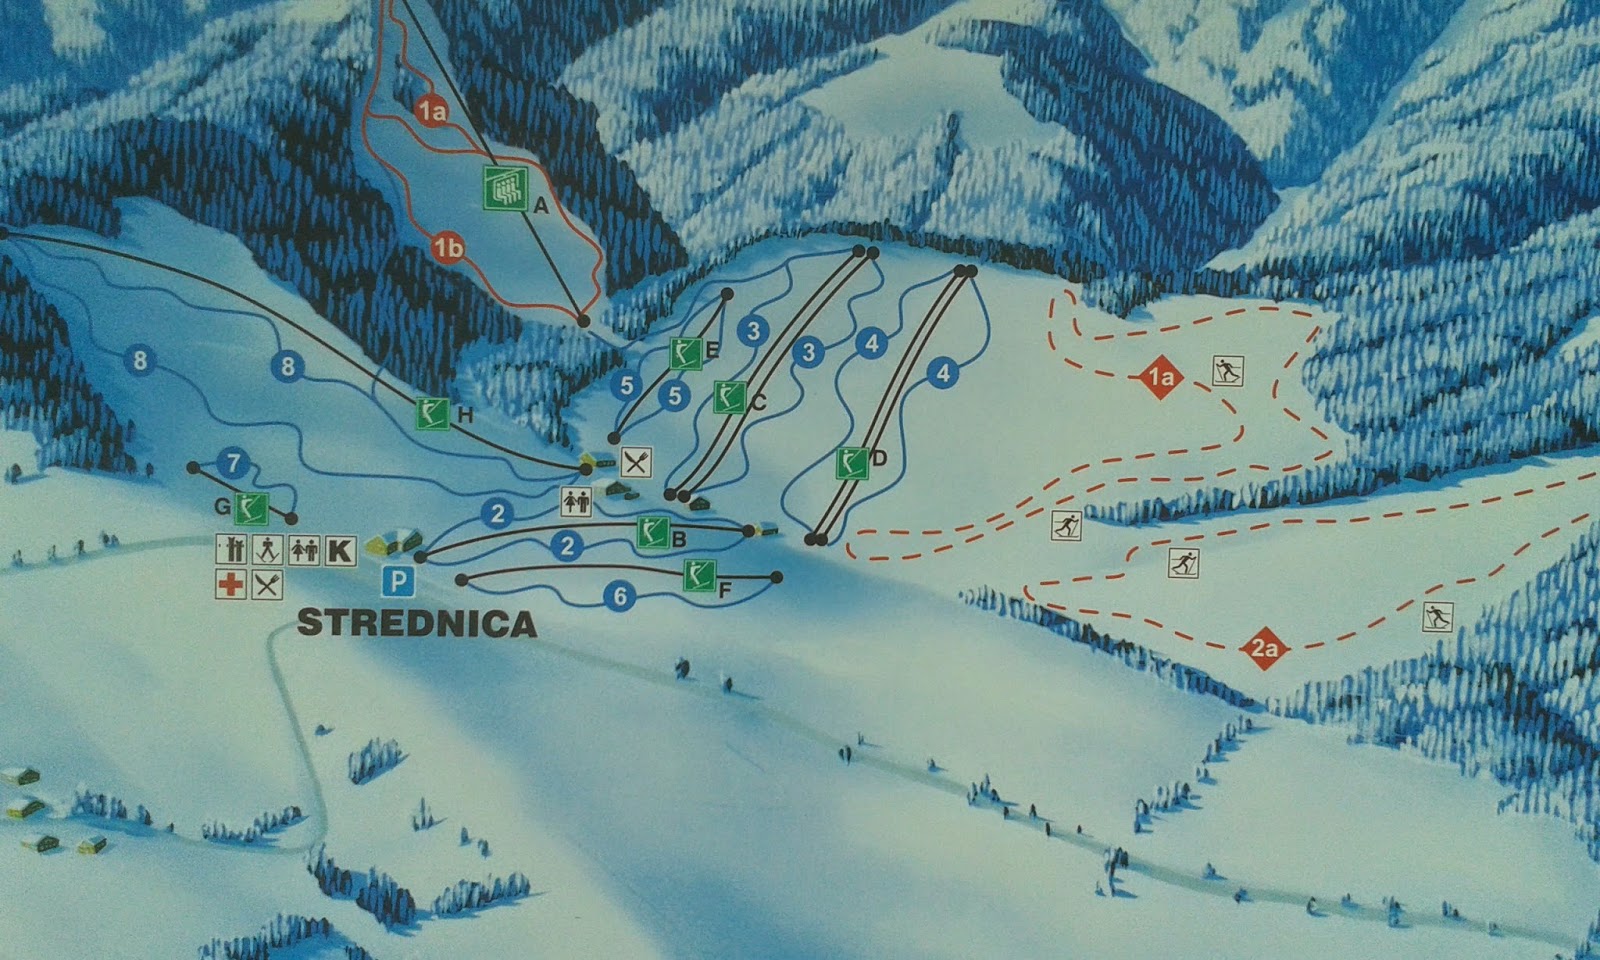 Ośrodek narciarski Strednica